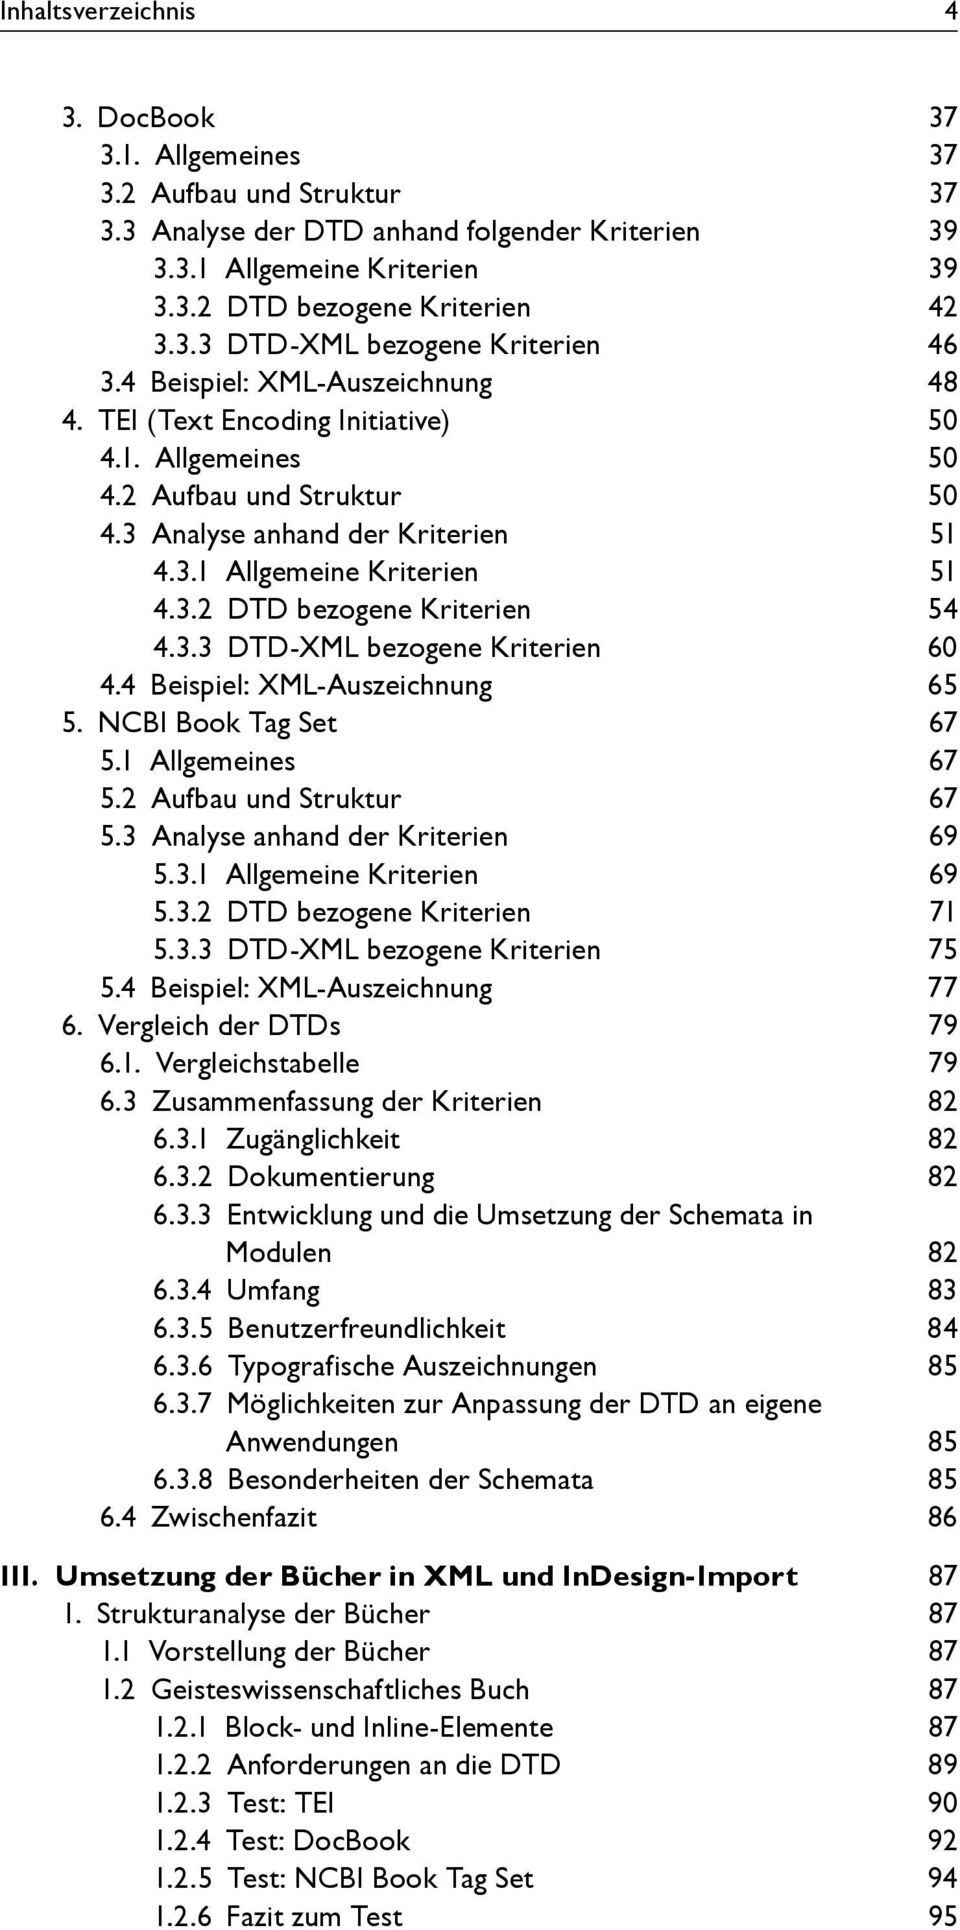 3.3 DTD-XML bezogene Kriterien 60 4.4 Beispiel: XML-Auszeichnung 65 5. NCBI Book Tag Set 67 5.1 Allgemeines 67 5.2 Aufbau und Struktur 67 5.3 Analyse anhand der Kriterien 69 5.3.1 Allgemeine Kriterien 69 5.